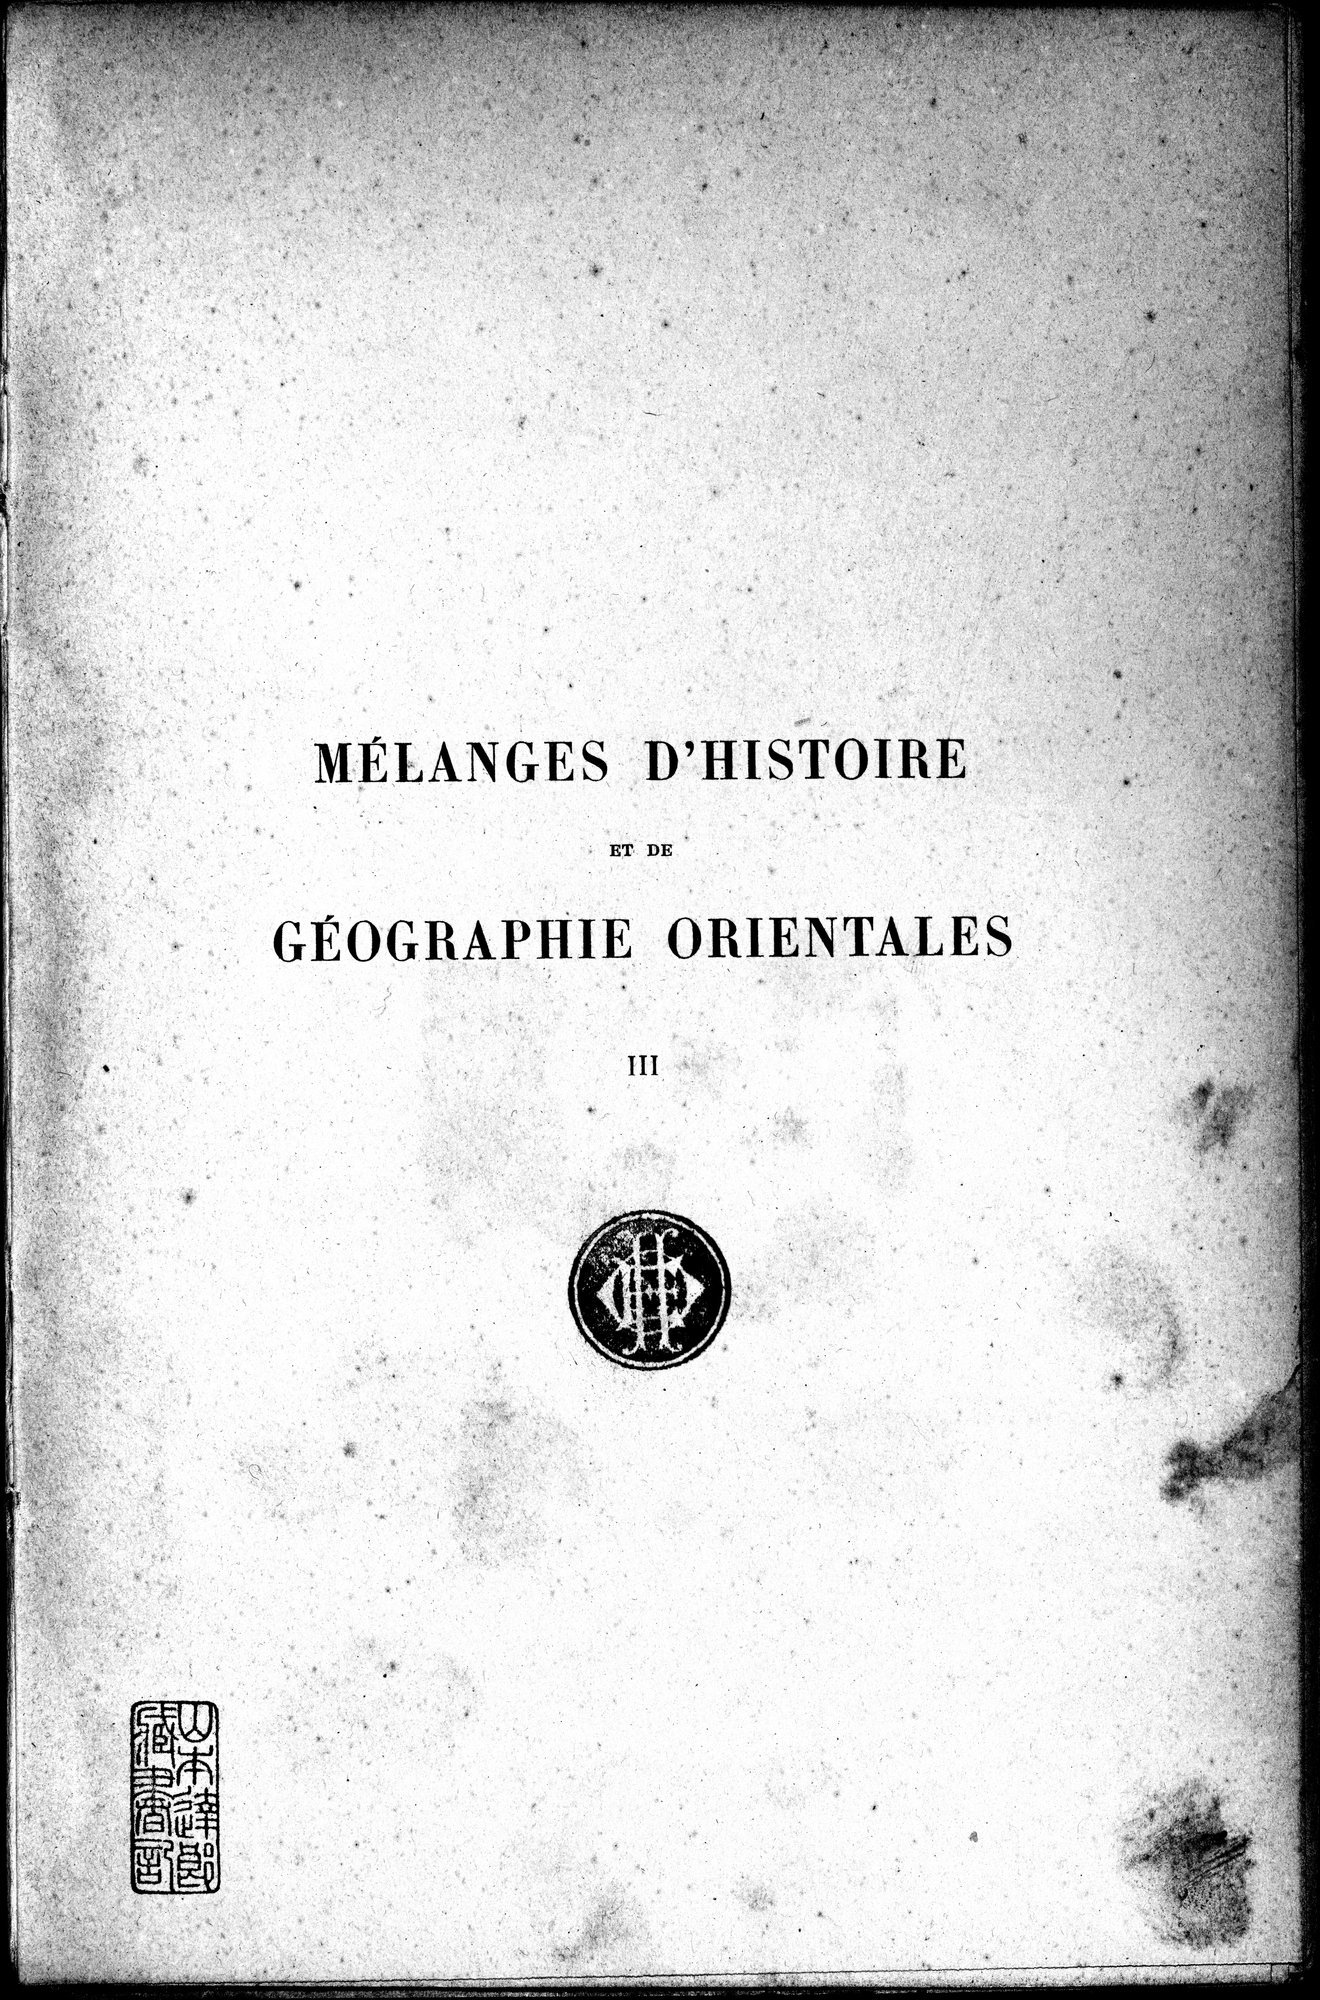 Mélanges d'Histoire et de Géographie Orientales : vol.3 / Page 5 (Grayscale High Resolution Image)